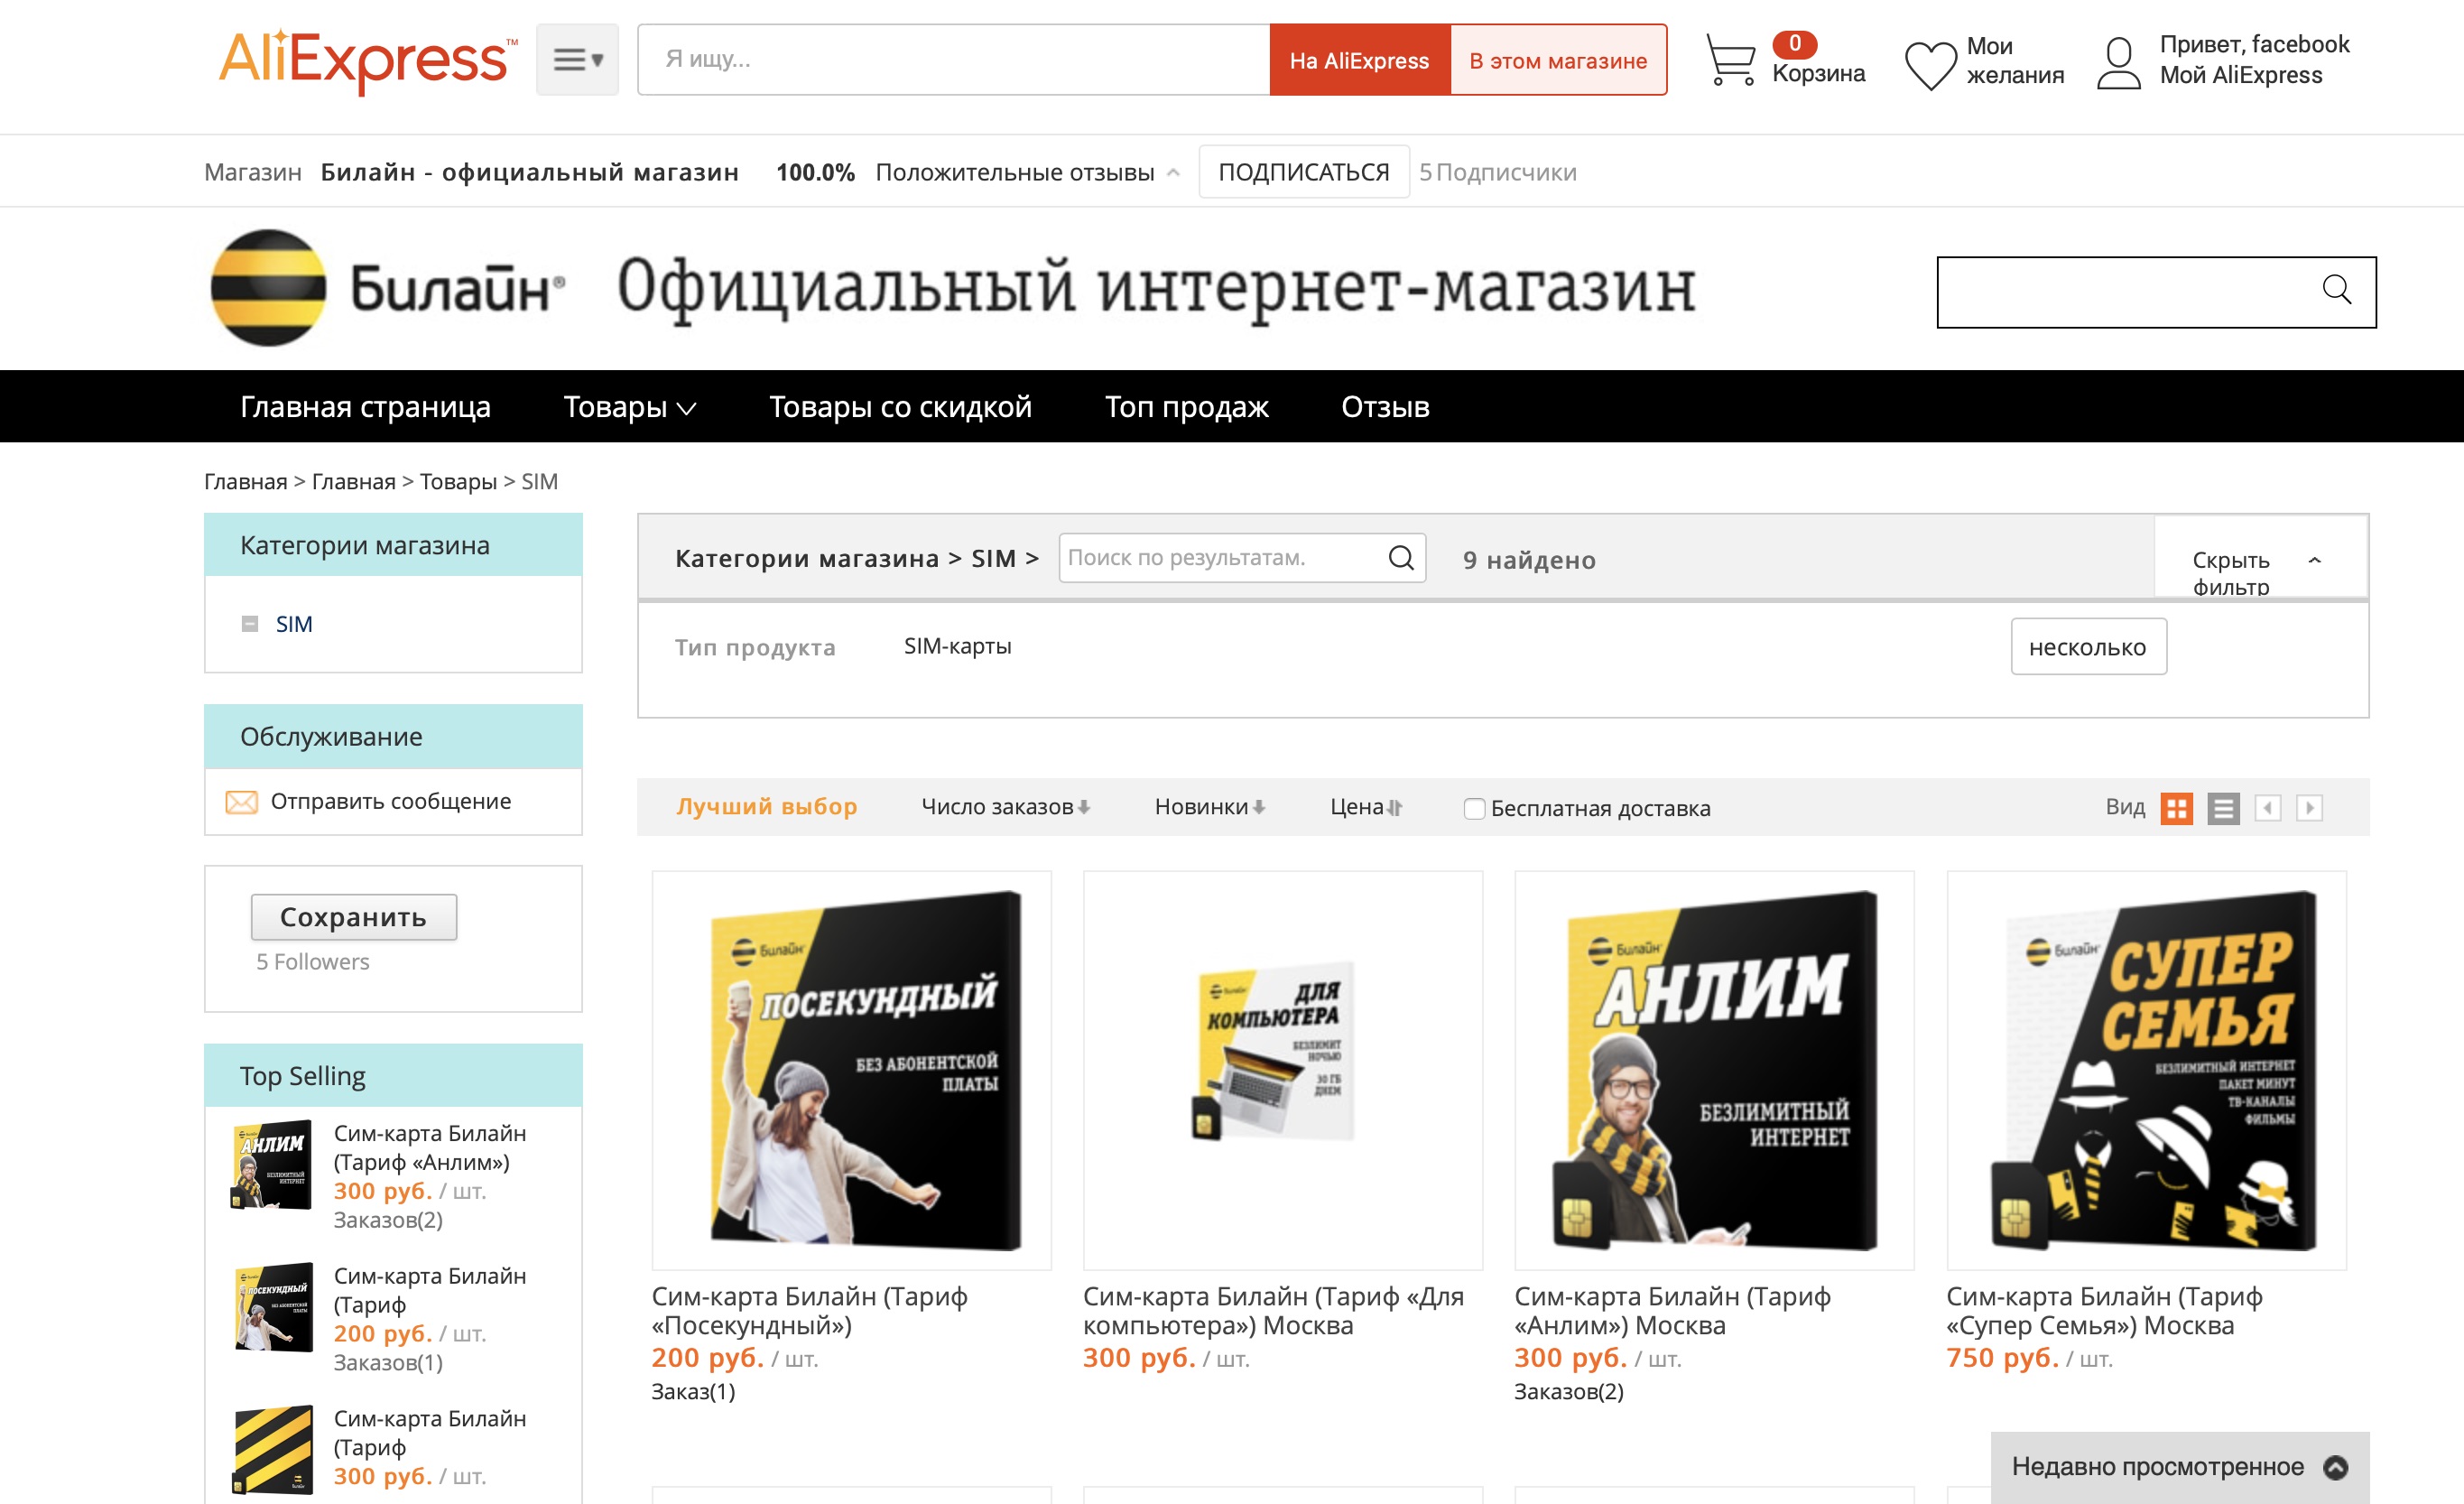 Билайн первым в России стал продавать SIM-карты на AliExpress